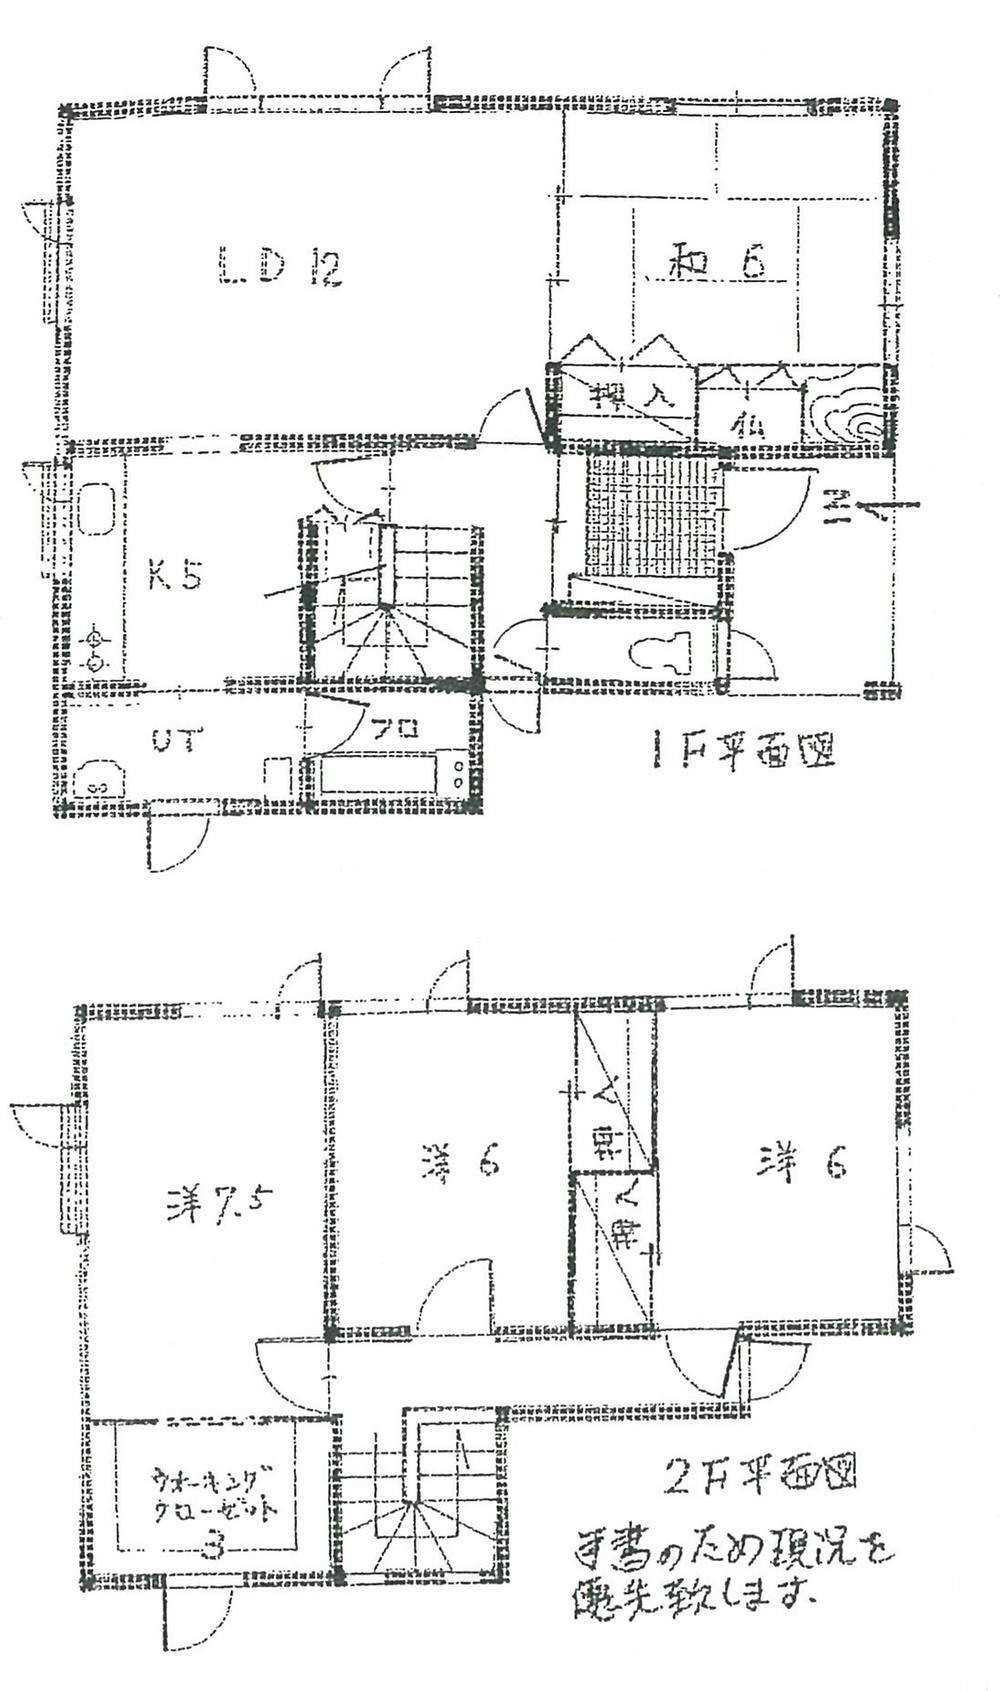 Floor plan. 8.5 million yen, 4LDK, Land area 184.6 sq m , Building area 109.29 sq m